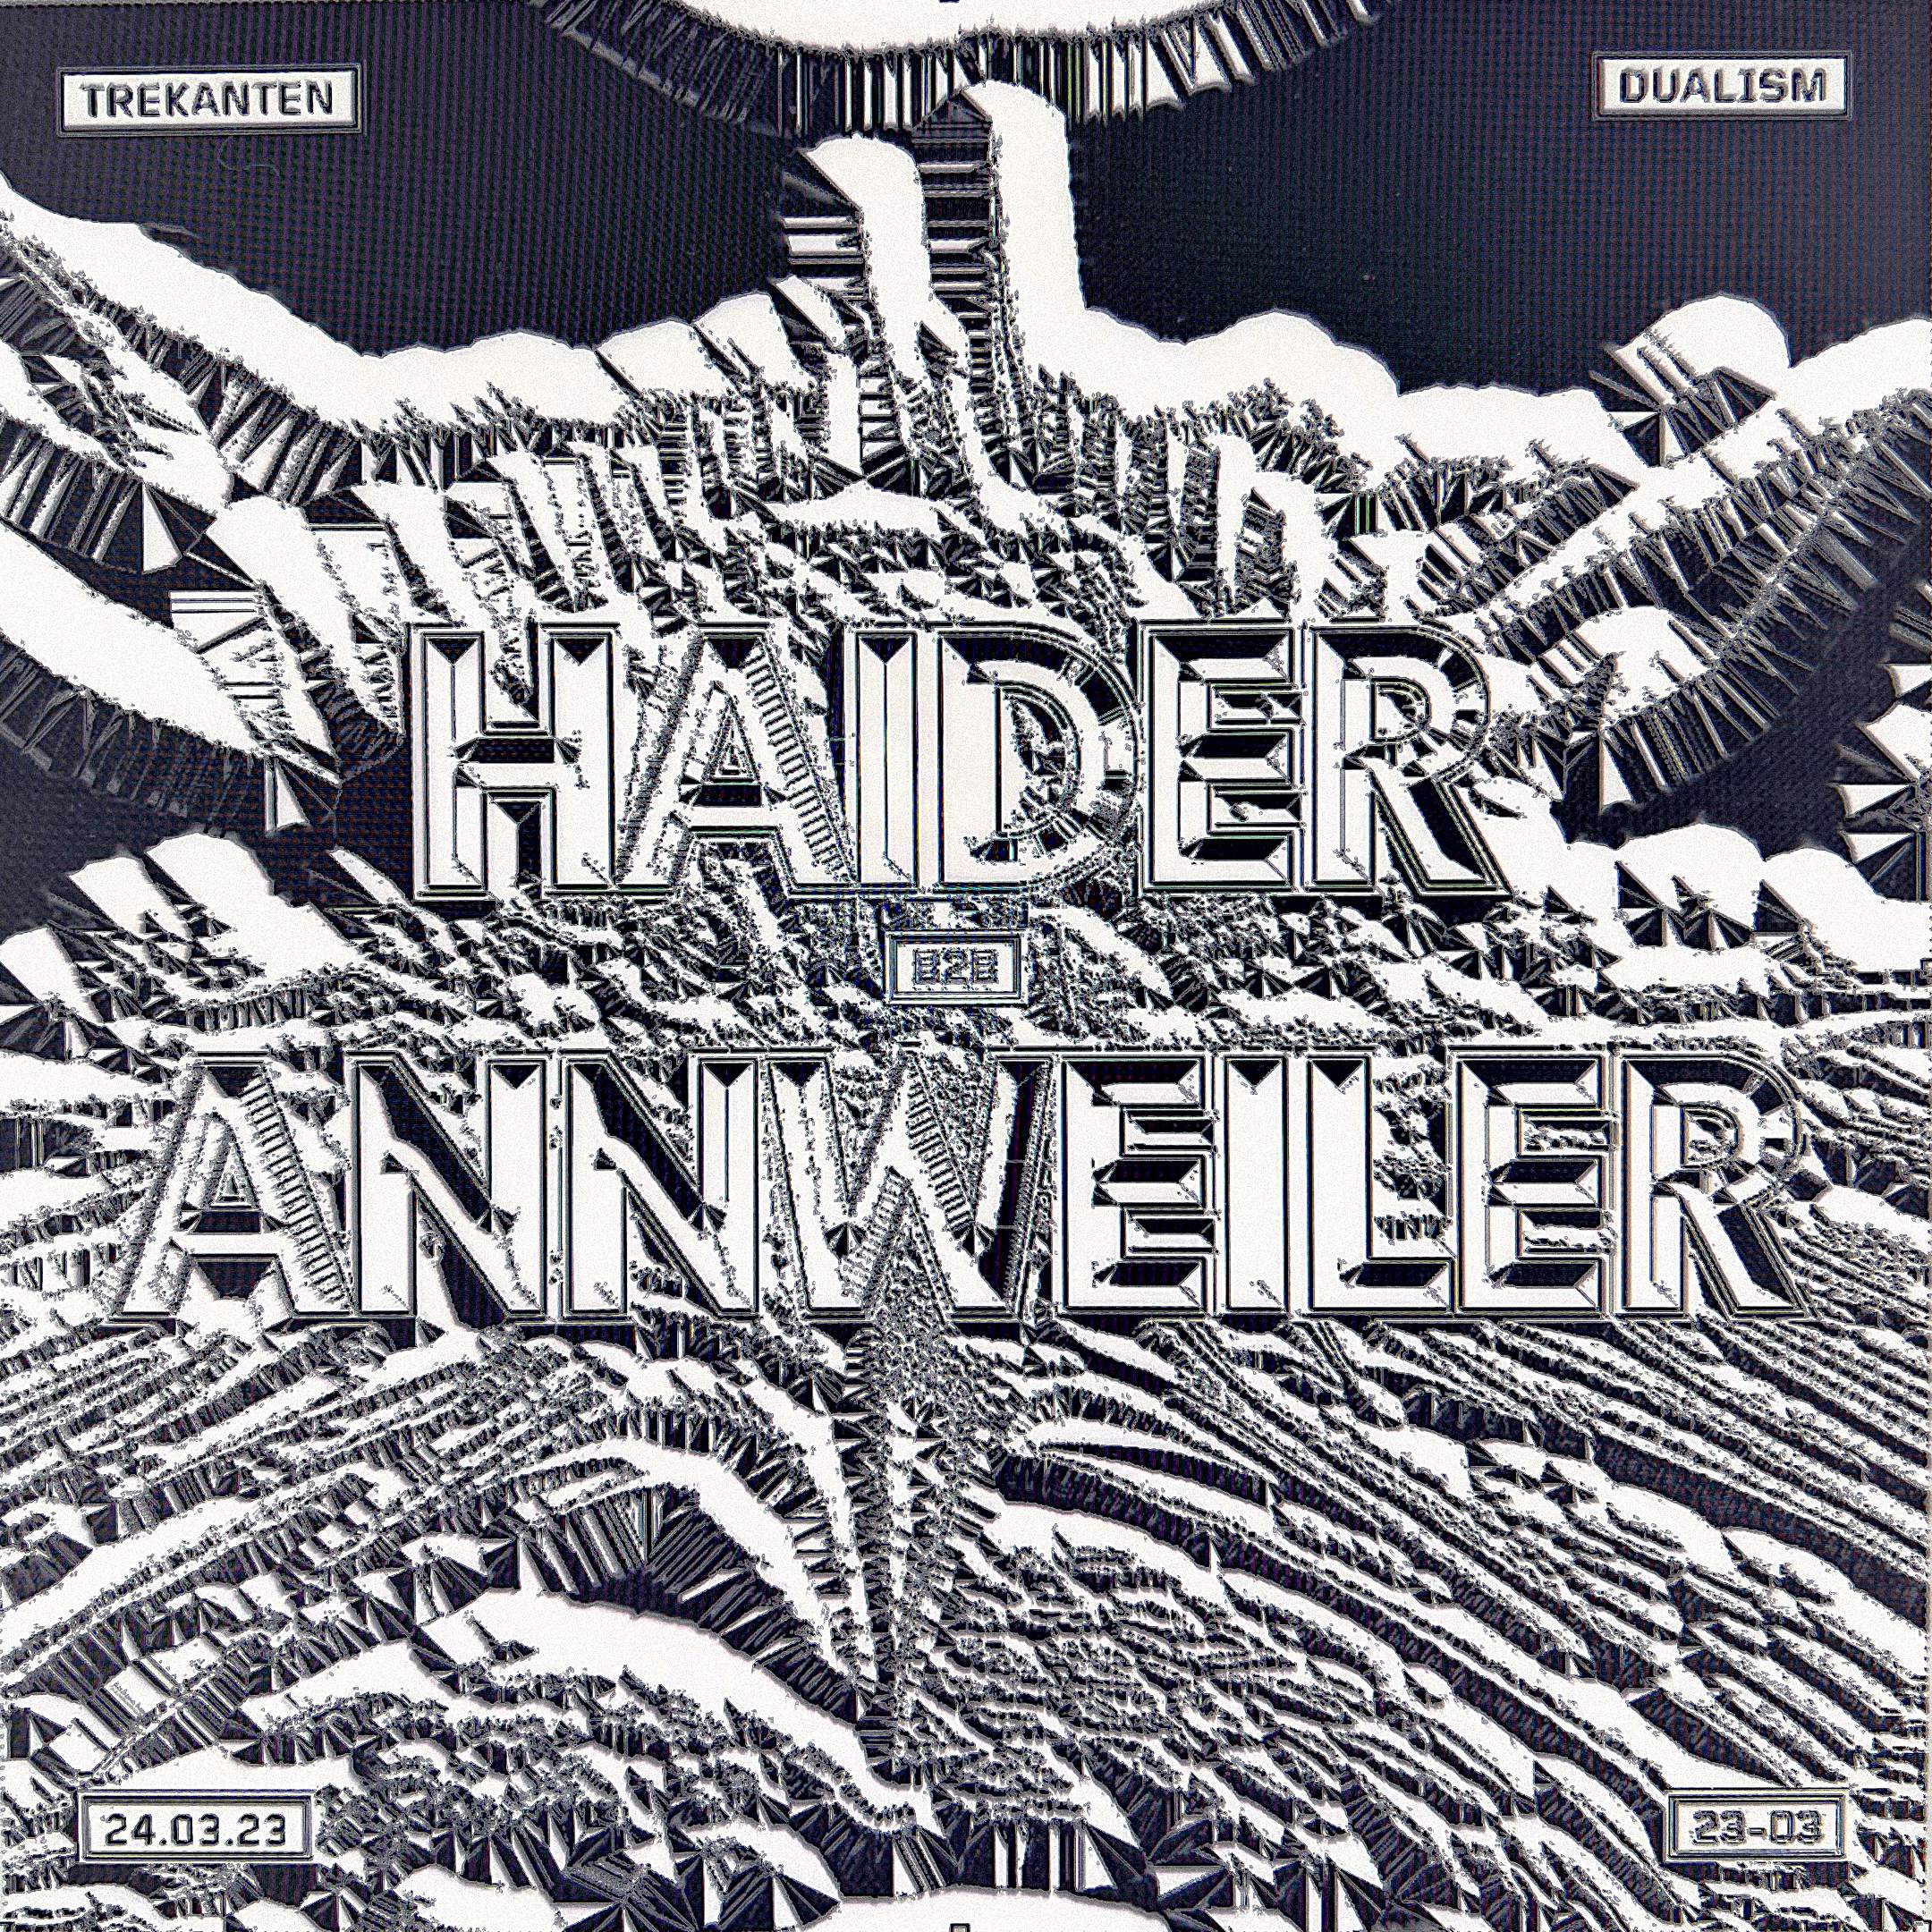 DUALISM: Haider B2B Annweiler - Página frontal